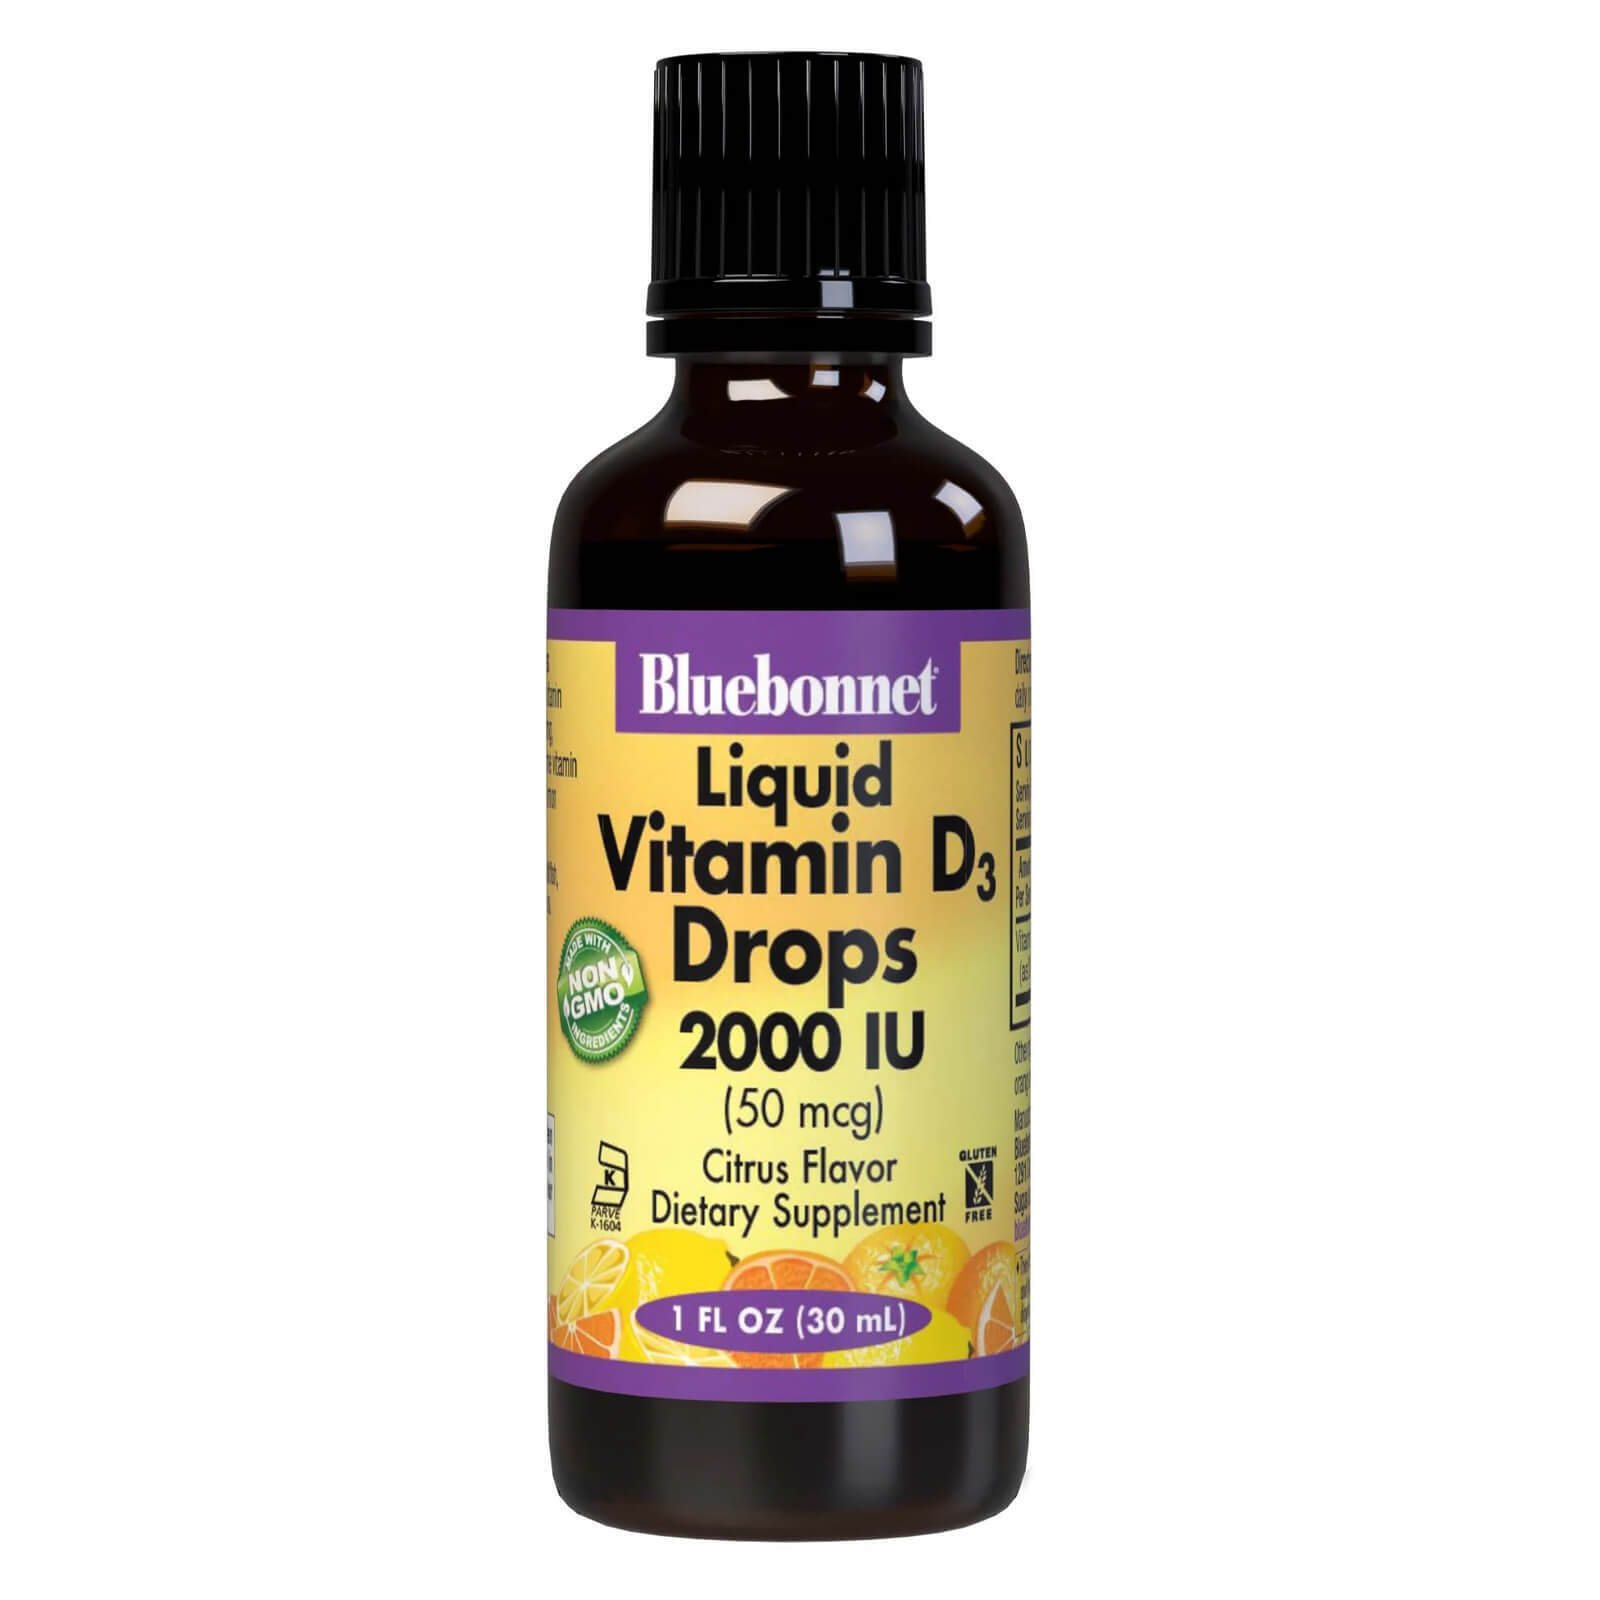 Bluebonnet Liquid Vitamin D3 Drops 50 Mcg (2000 IU) Citrus 1 fl oz